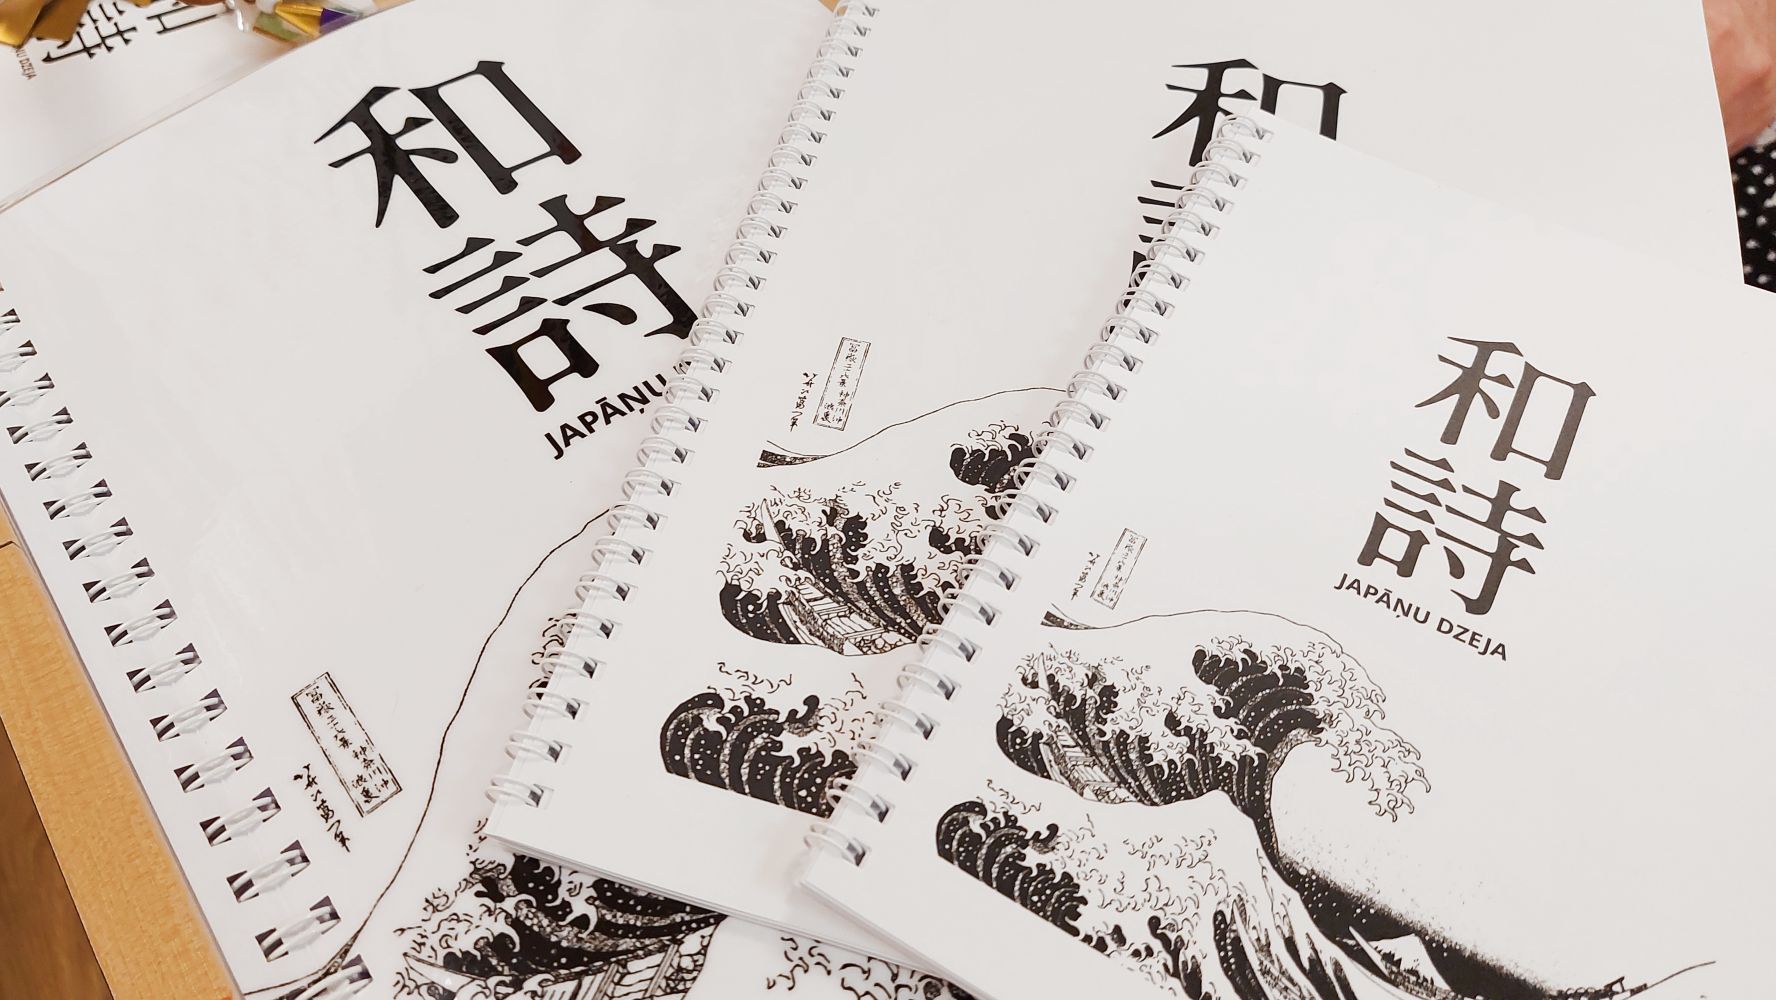 Grāmata "Japāņu dzeja" Braila rakstā, palielinātā drukā un parastajā iespiedrakstā